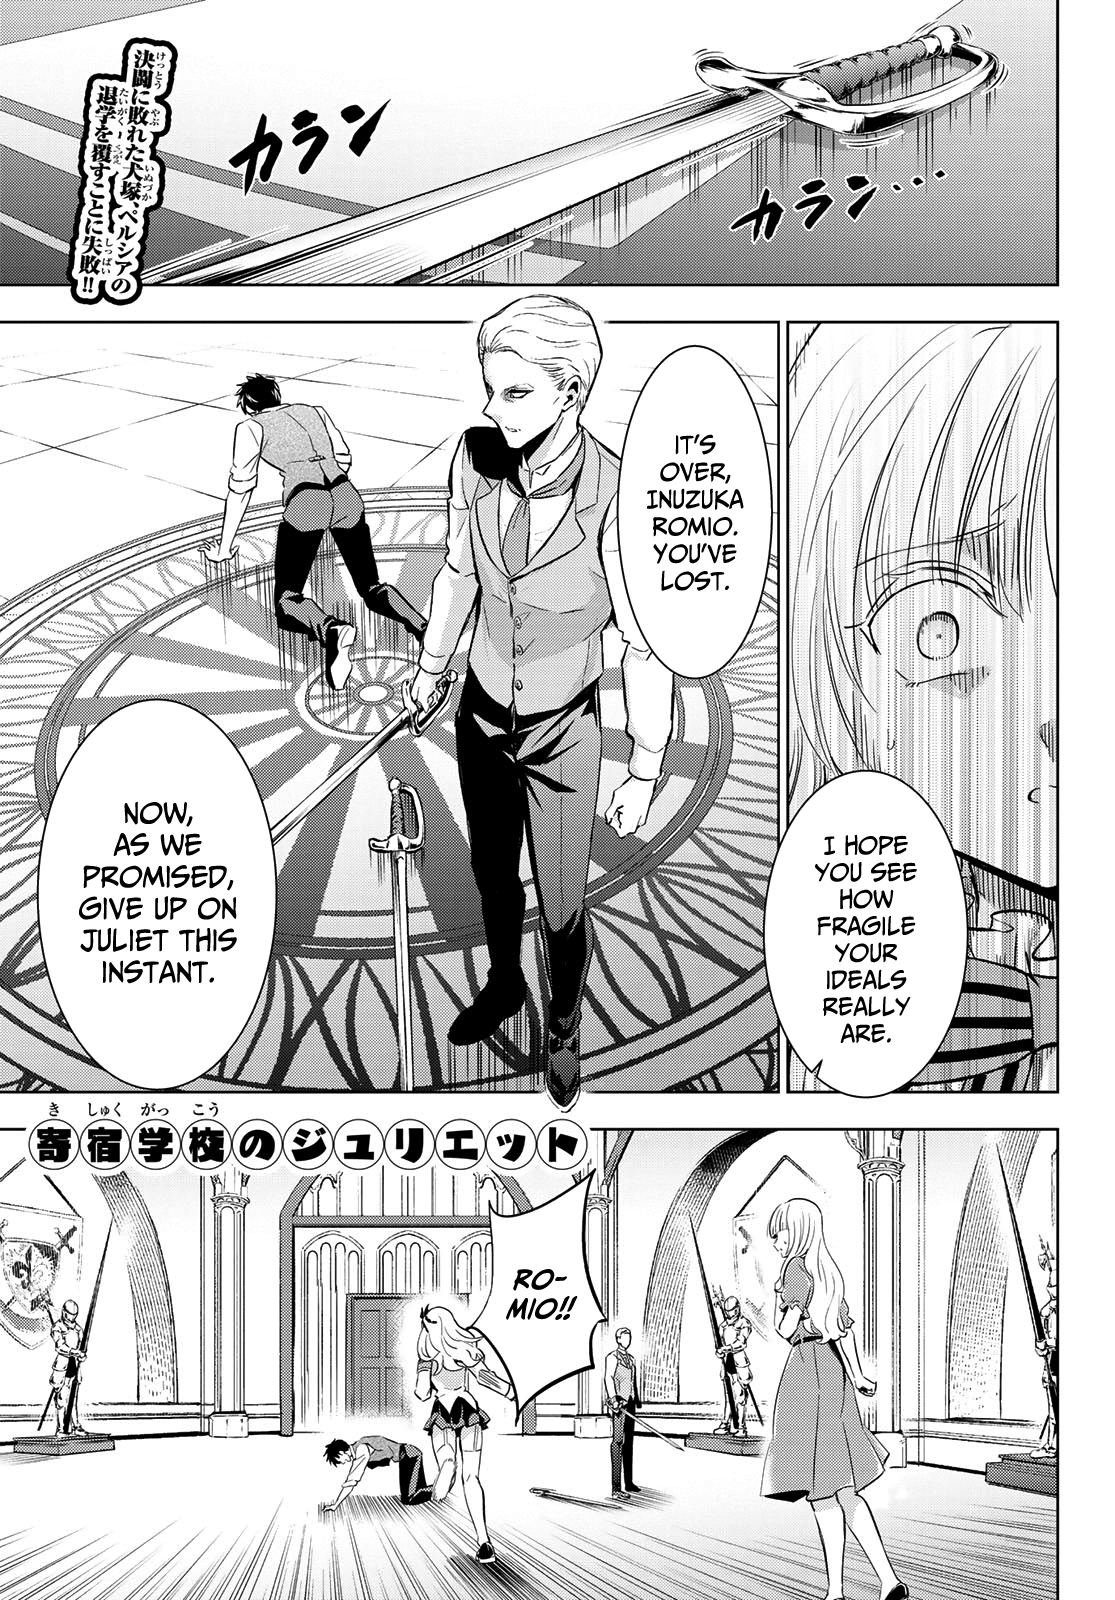 Kishuku Gakkou No Juliet - Page 1